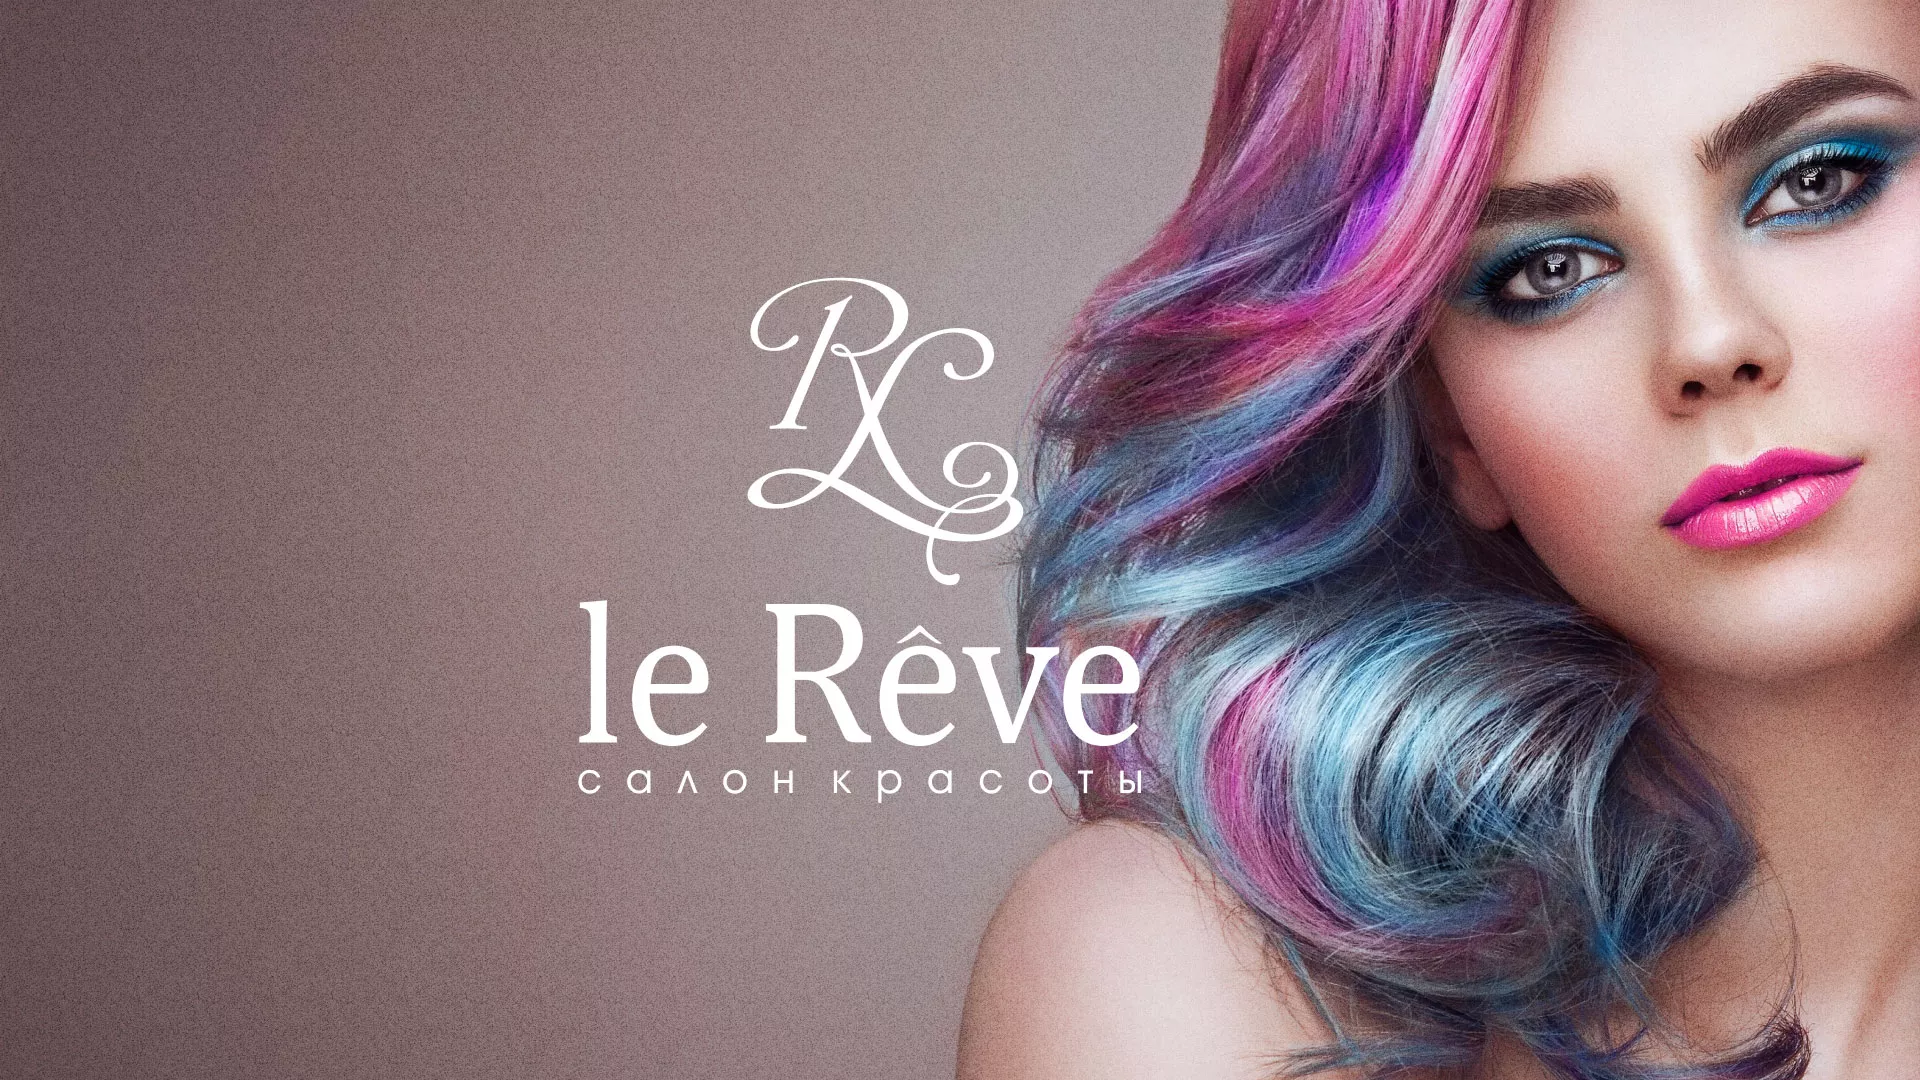 Создание сайта для салона красоты «Le Reve» в Тамбове